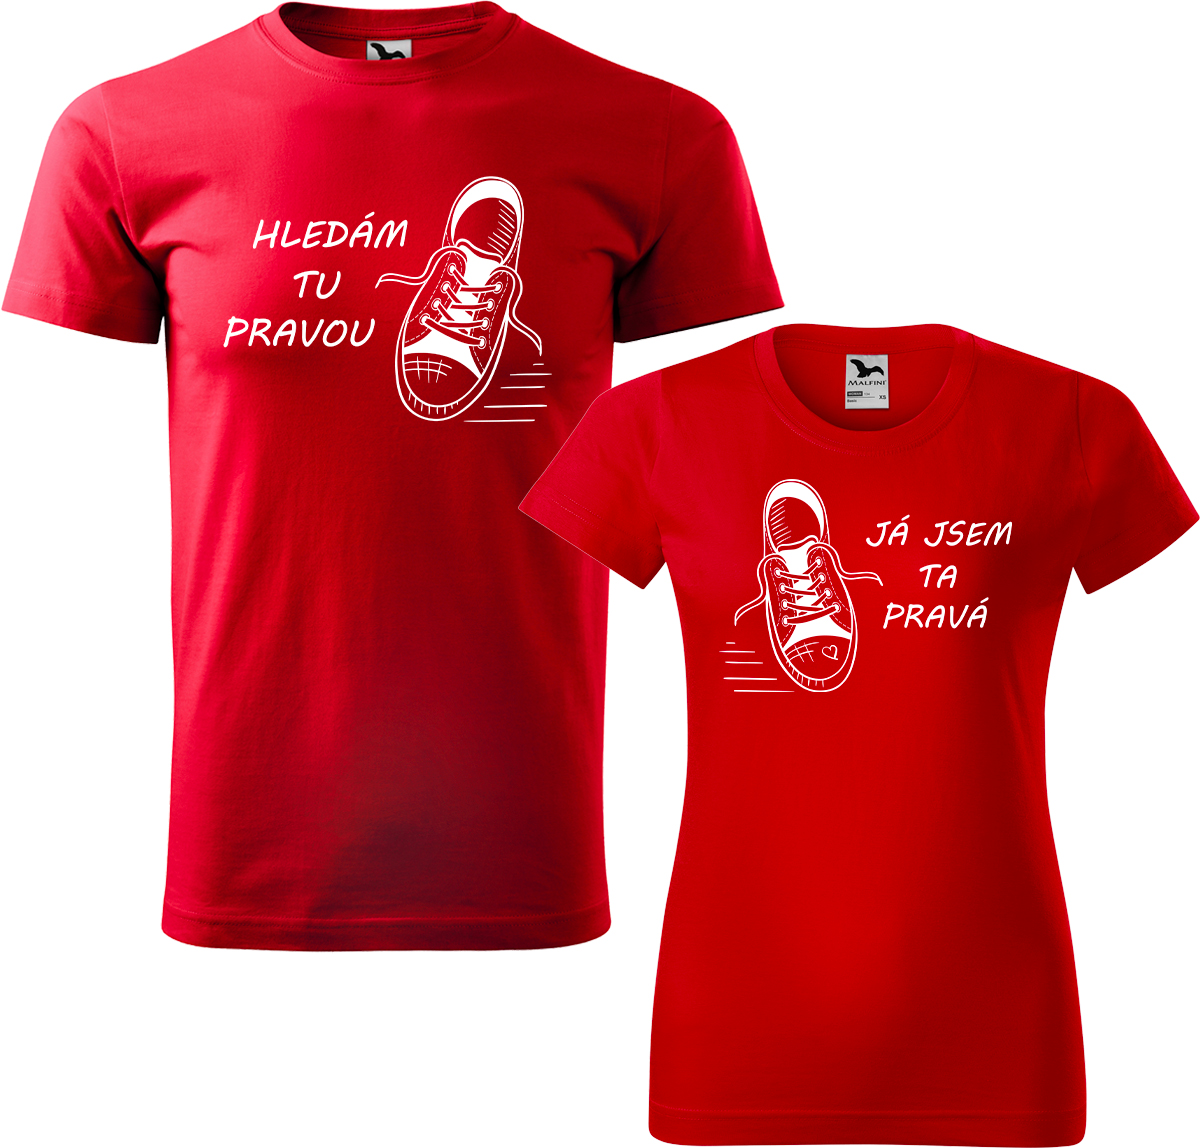 Trička pro páry - Kecky Barva: Červená (07), Velikost dámské tričko: L, Velikost pánské tričko: L